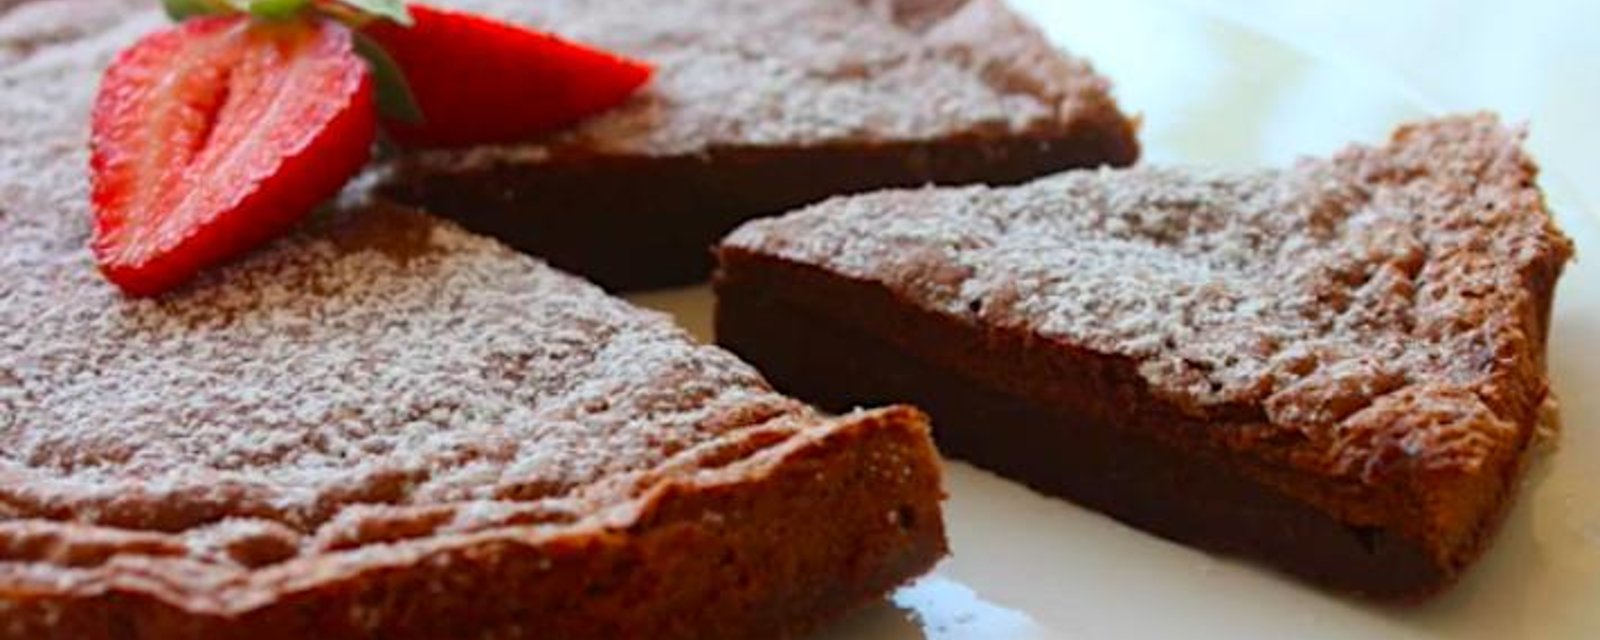 Gâteau moelleux au parfait goût de NOISETTES et de chocolat... Prêt en 5 minutes!